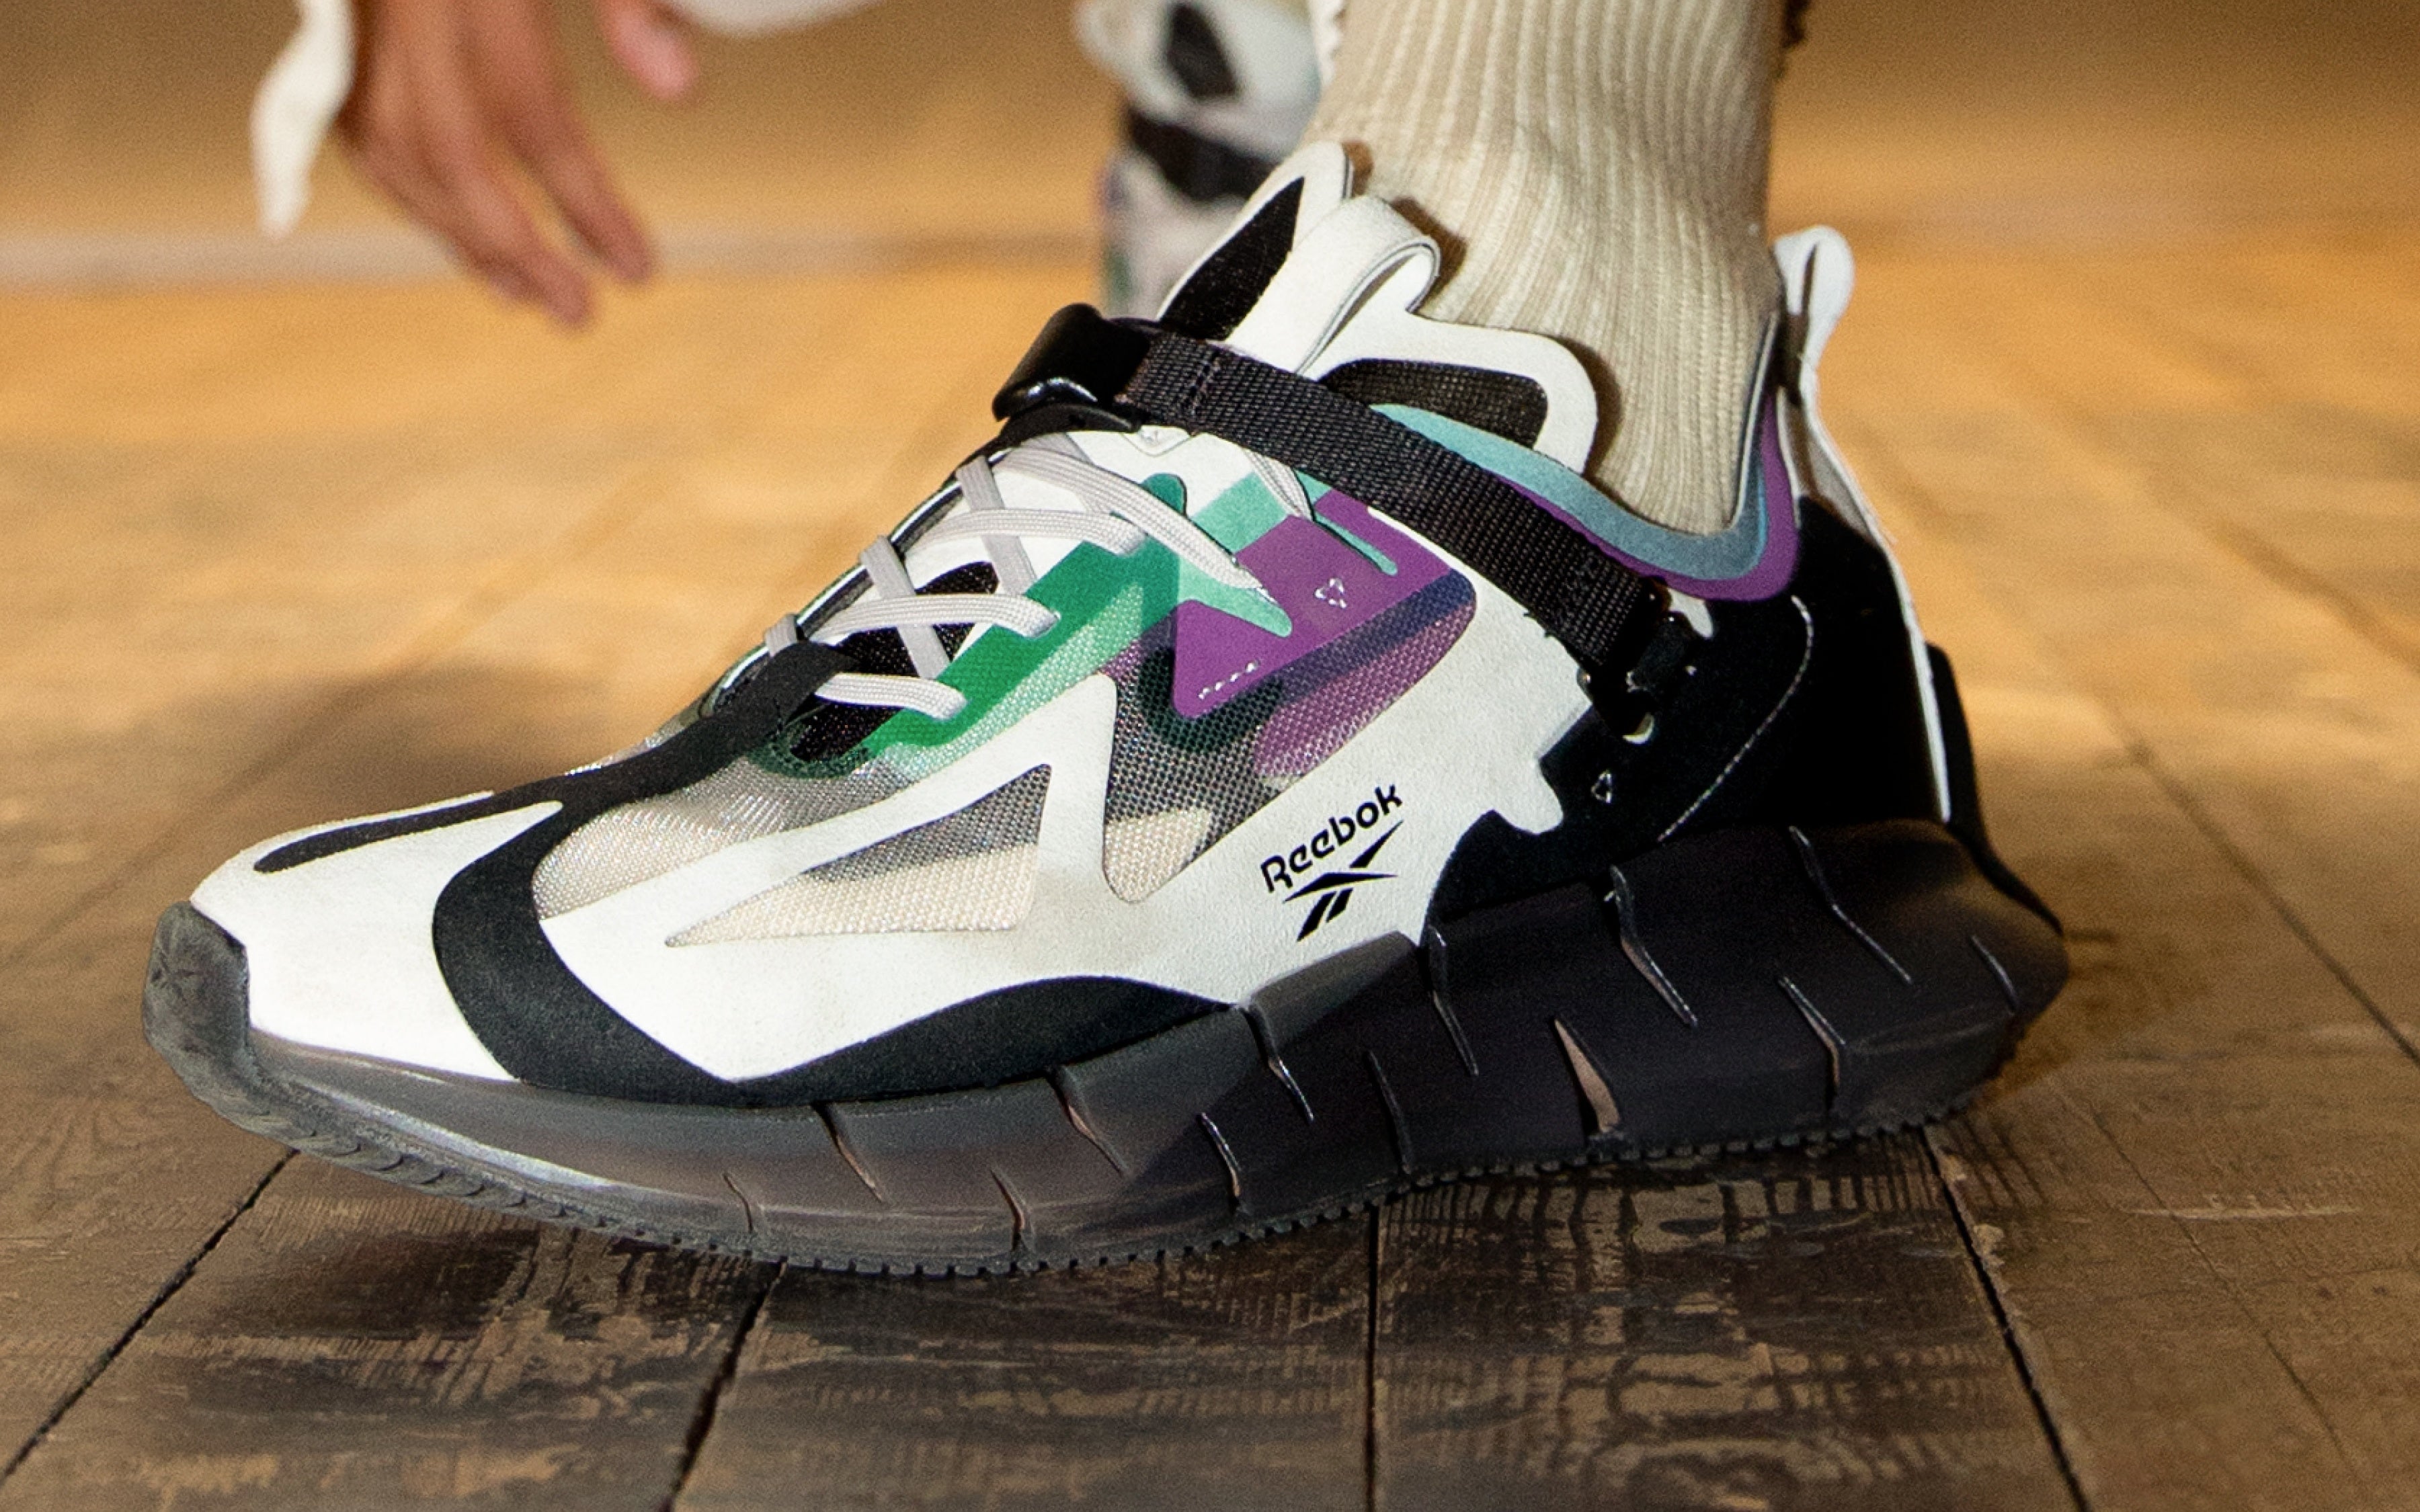 Reebok's Zig Kinetic Concept_Type 1 Sneaker Has A Launch Date